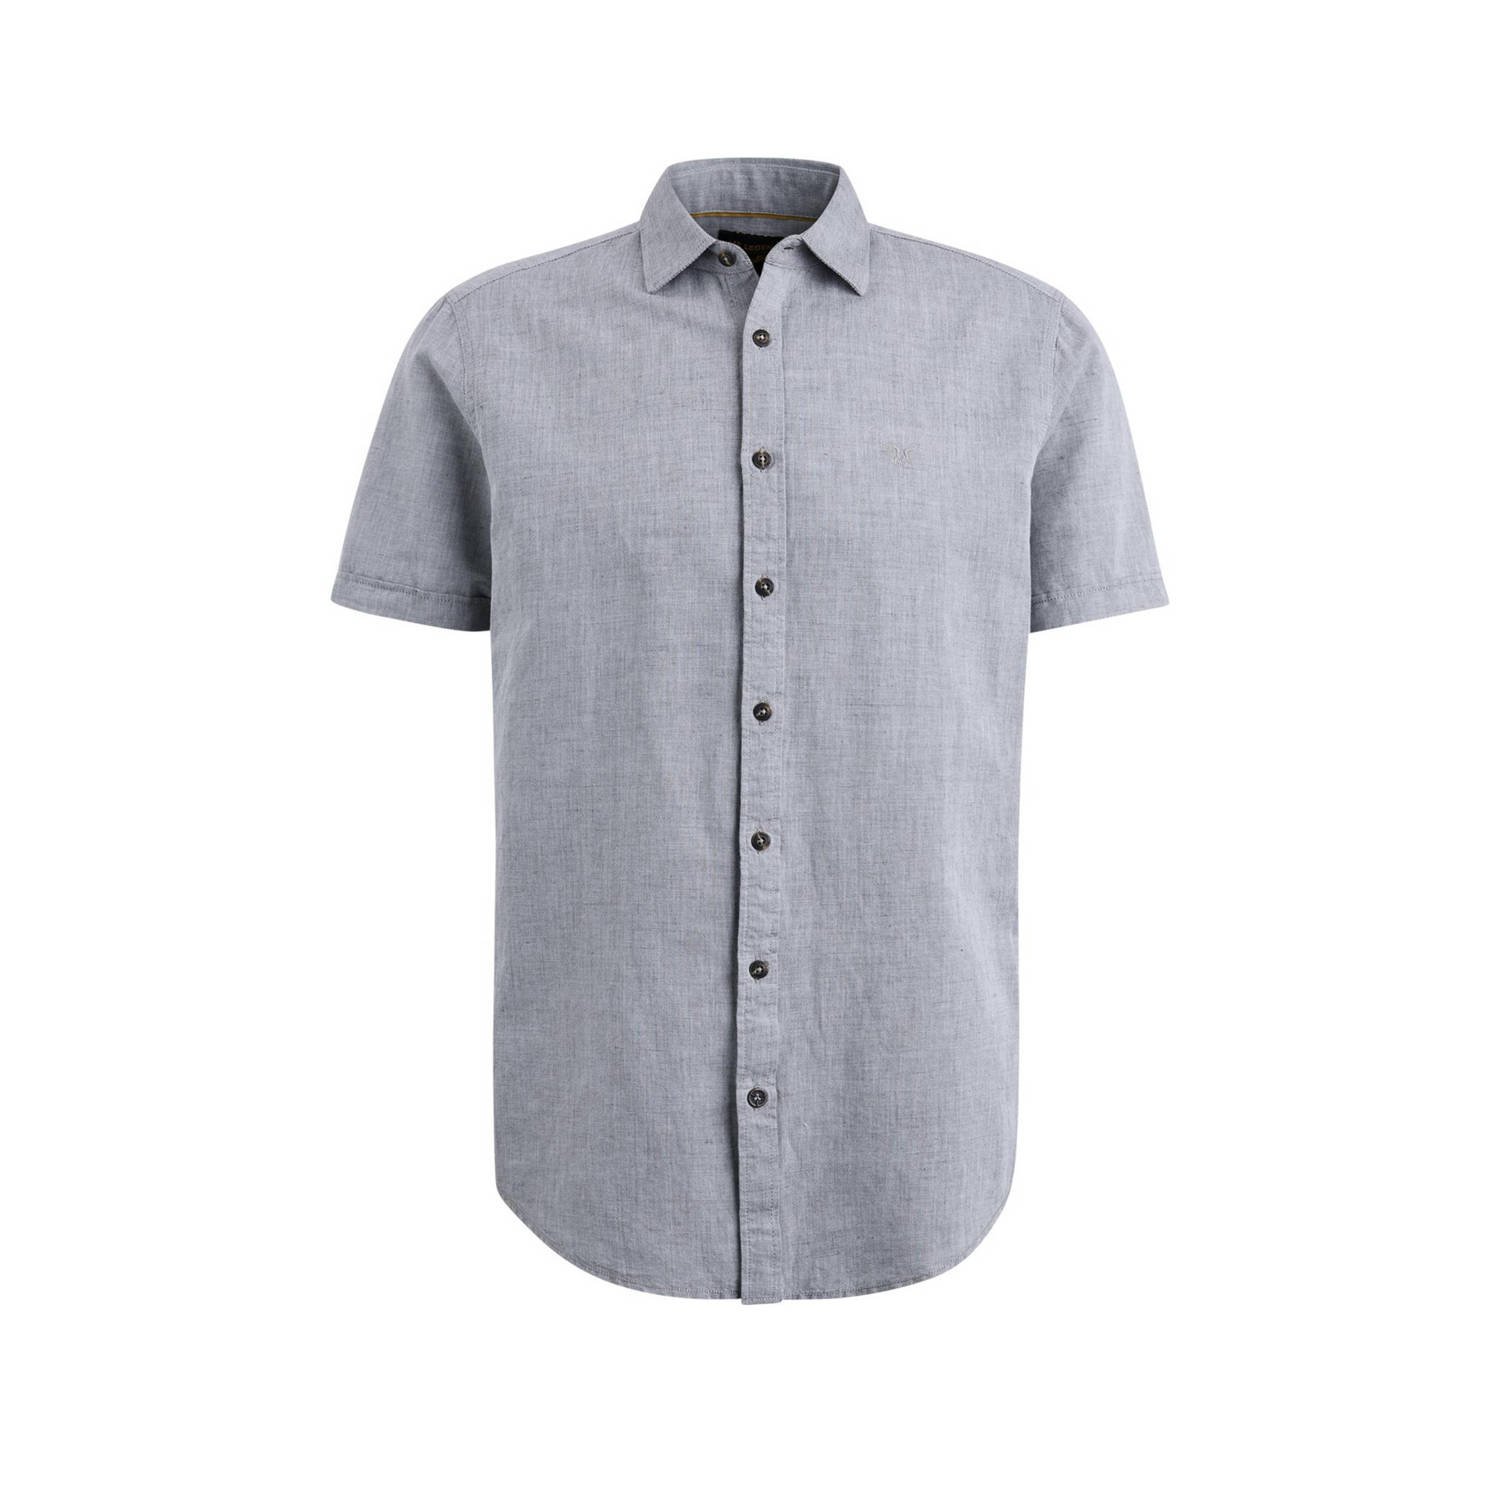 PME LEGEND Heren Overhemden Short Sleeve Shirt Ctn Linen 2tonen Owen Groen